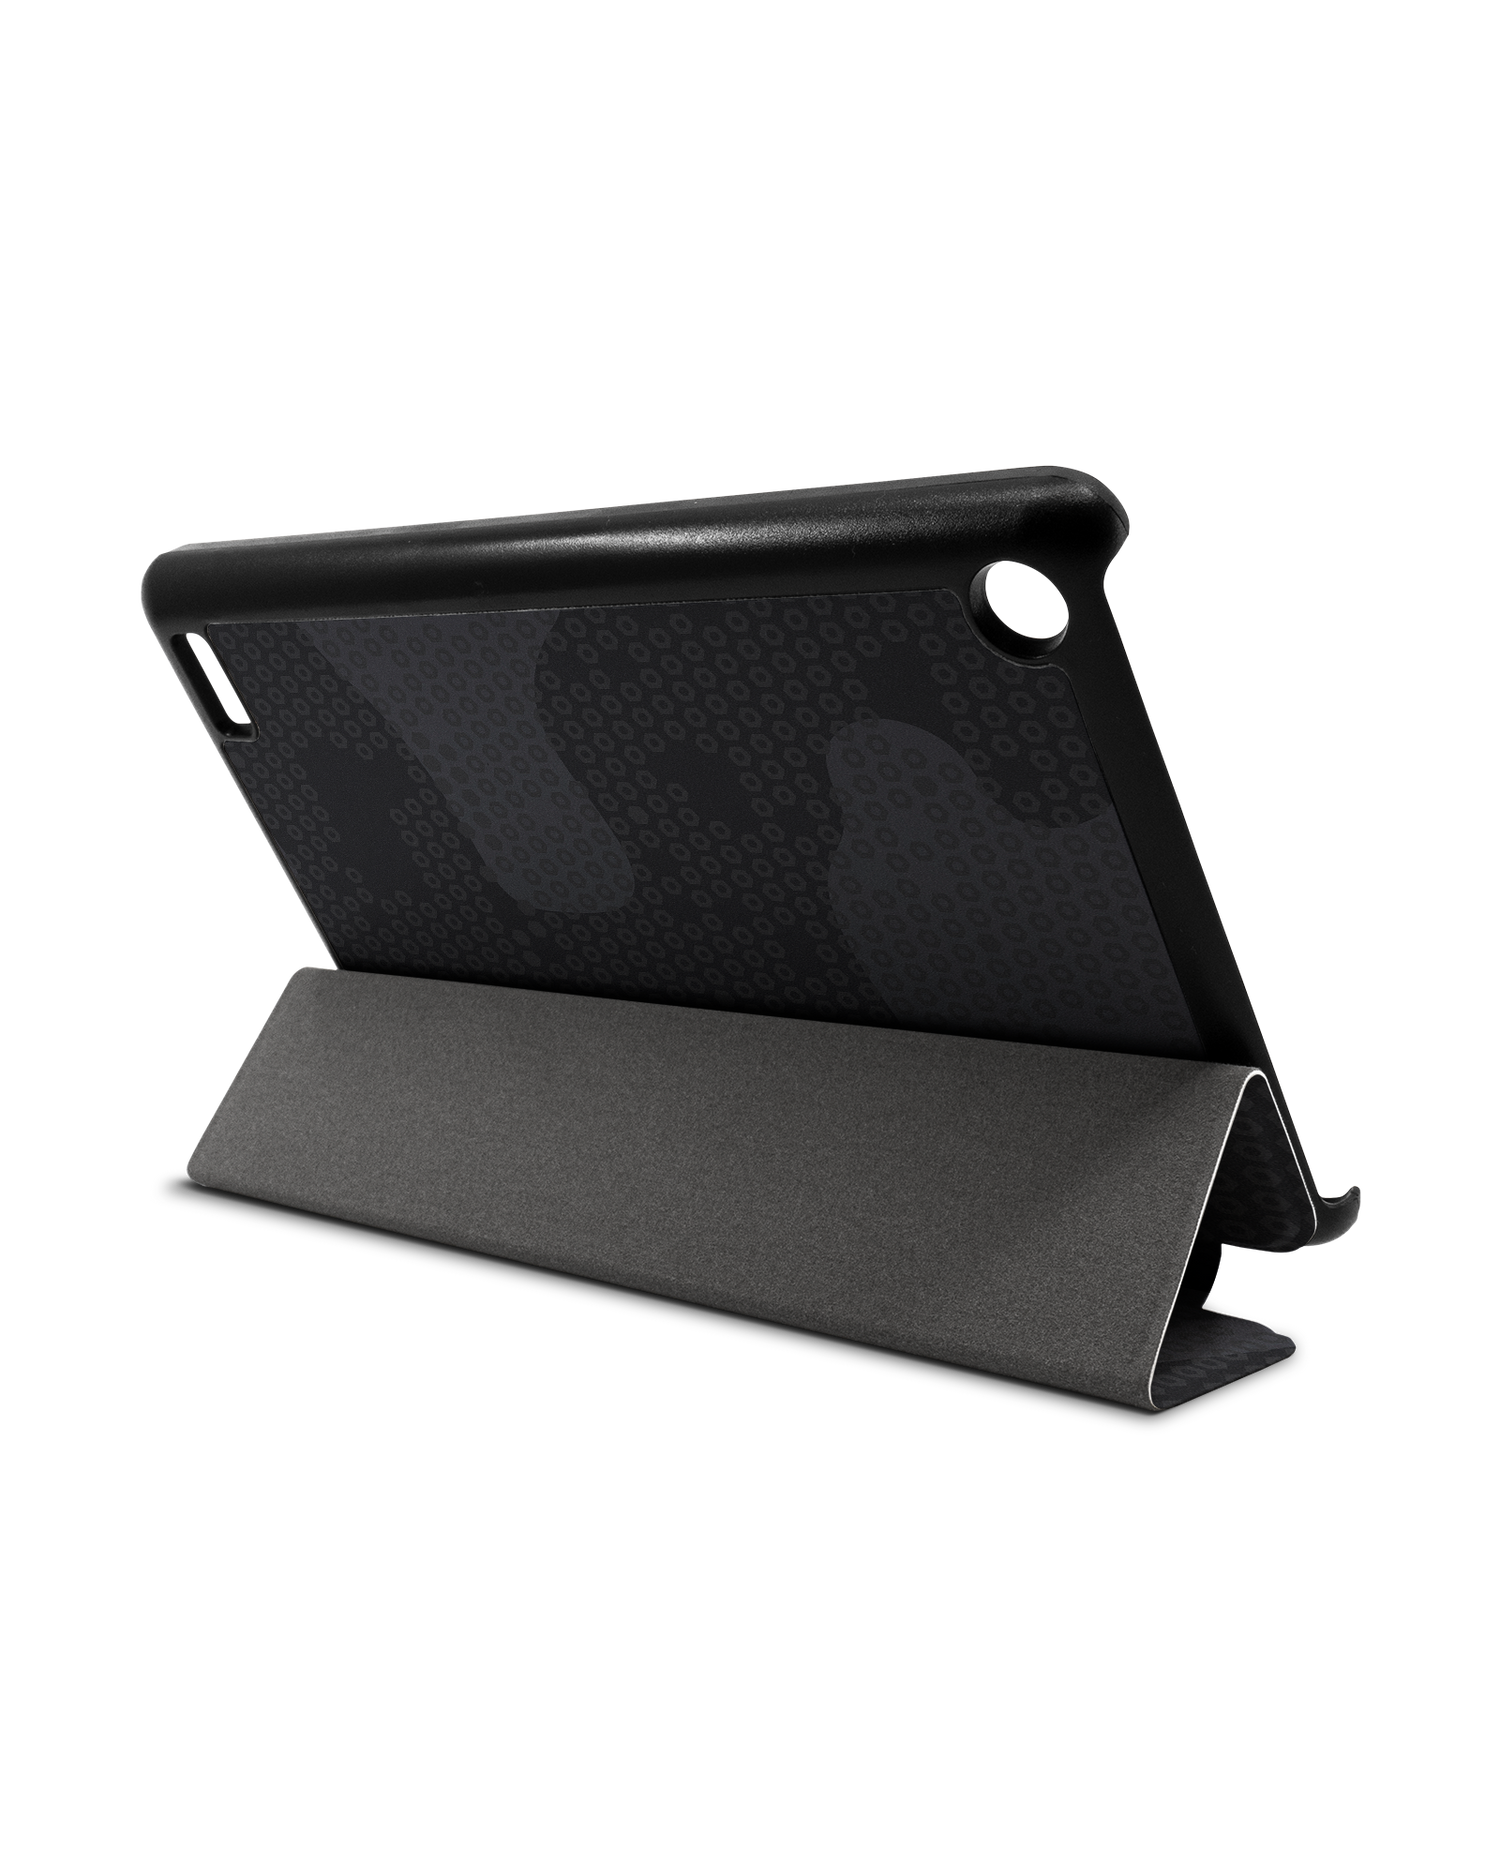 Spec Ops Dark Tablet Smart Case für Amazon Fire 7: Aufgestellt im Querformat